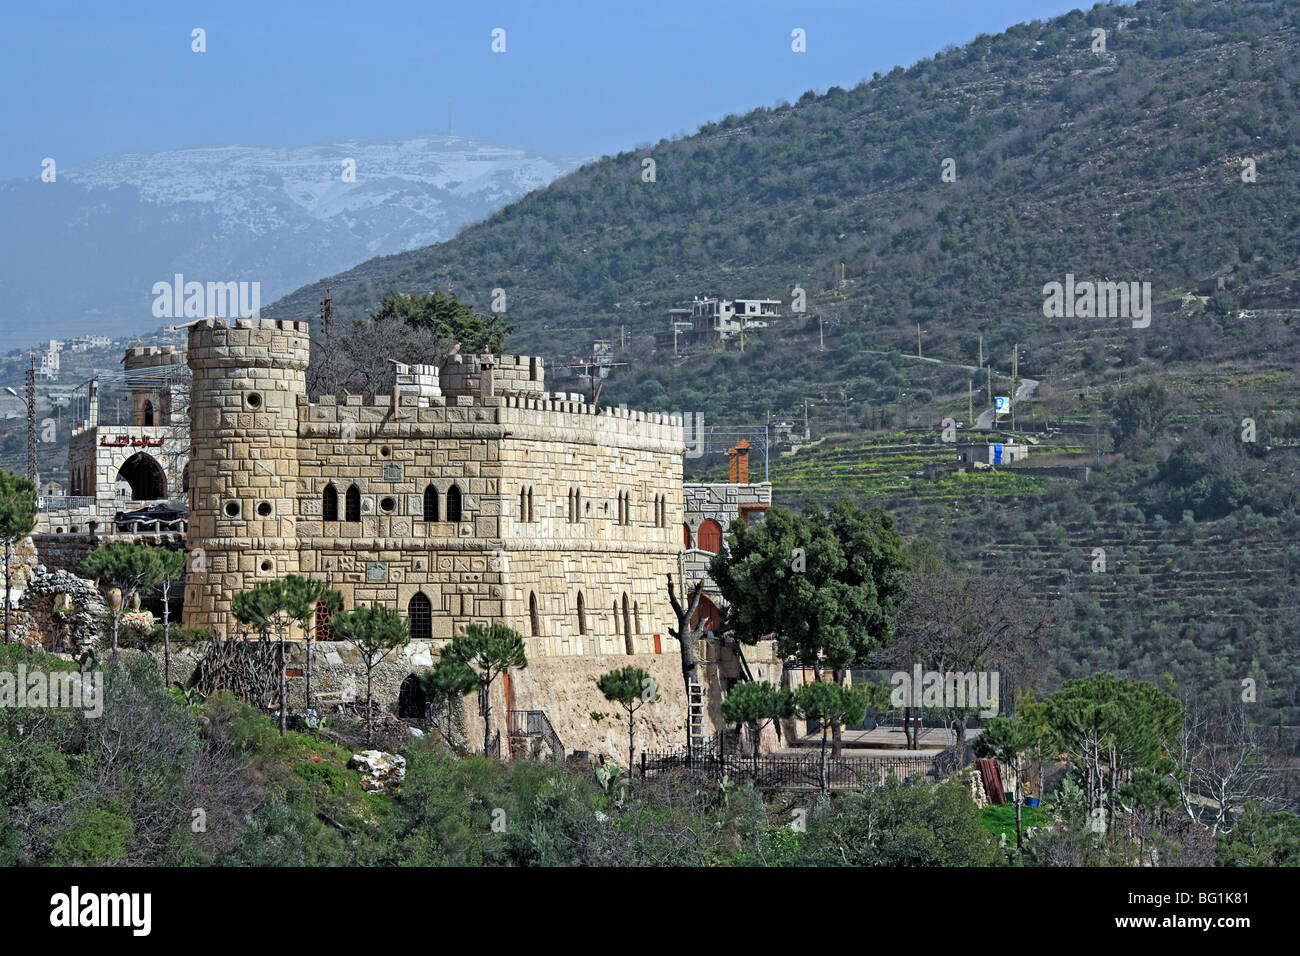 Musa château moderne, l'architecture libanaise, Chouf, Liban Banque D'Images